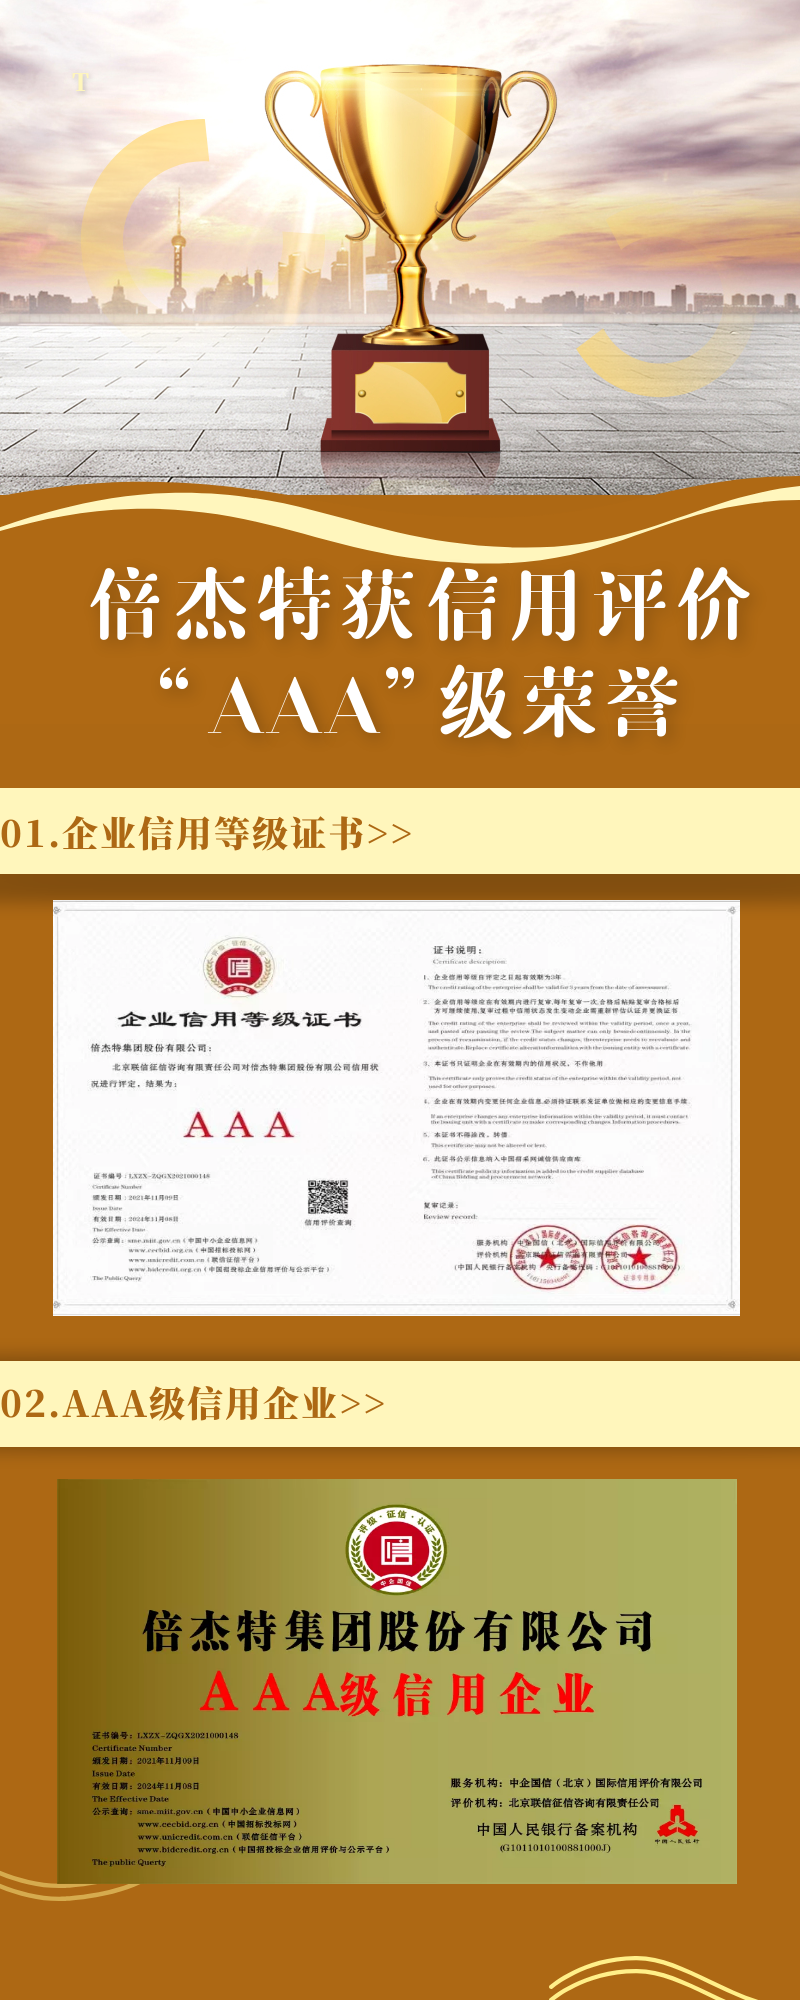 倍杰特荣获联信征信、中企国信信用评价“AAA”级荣誉